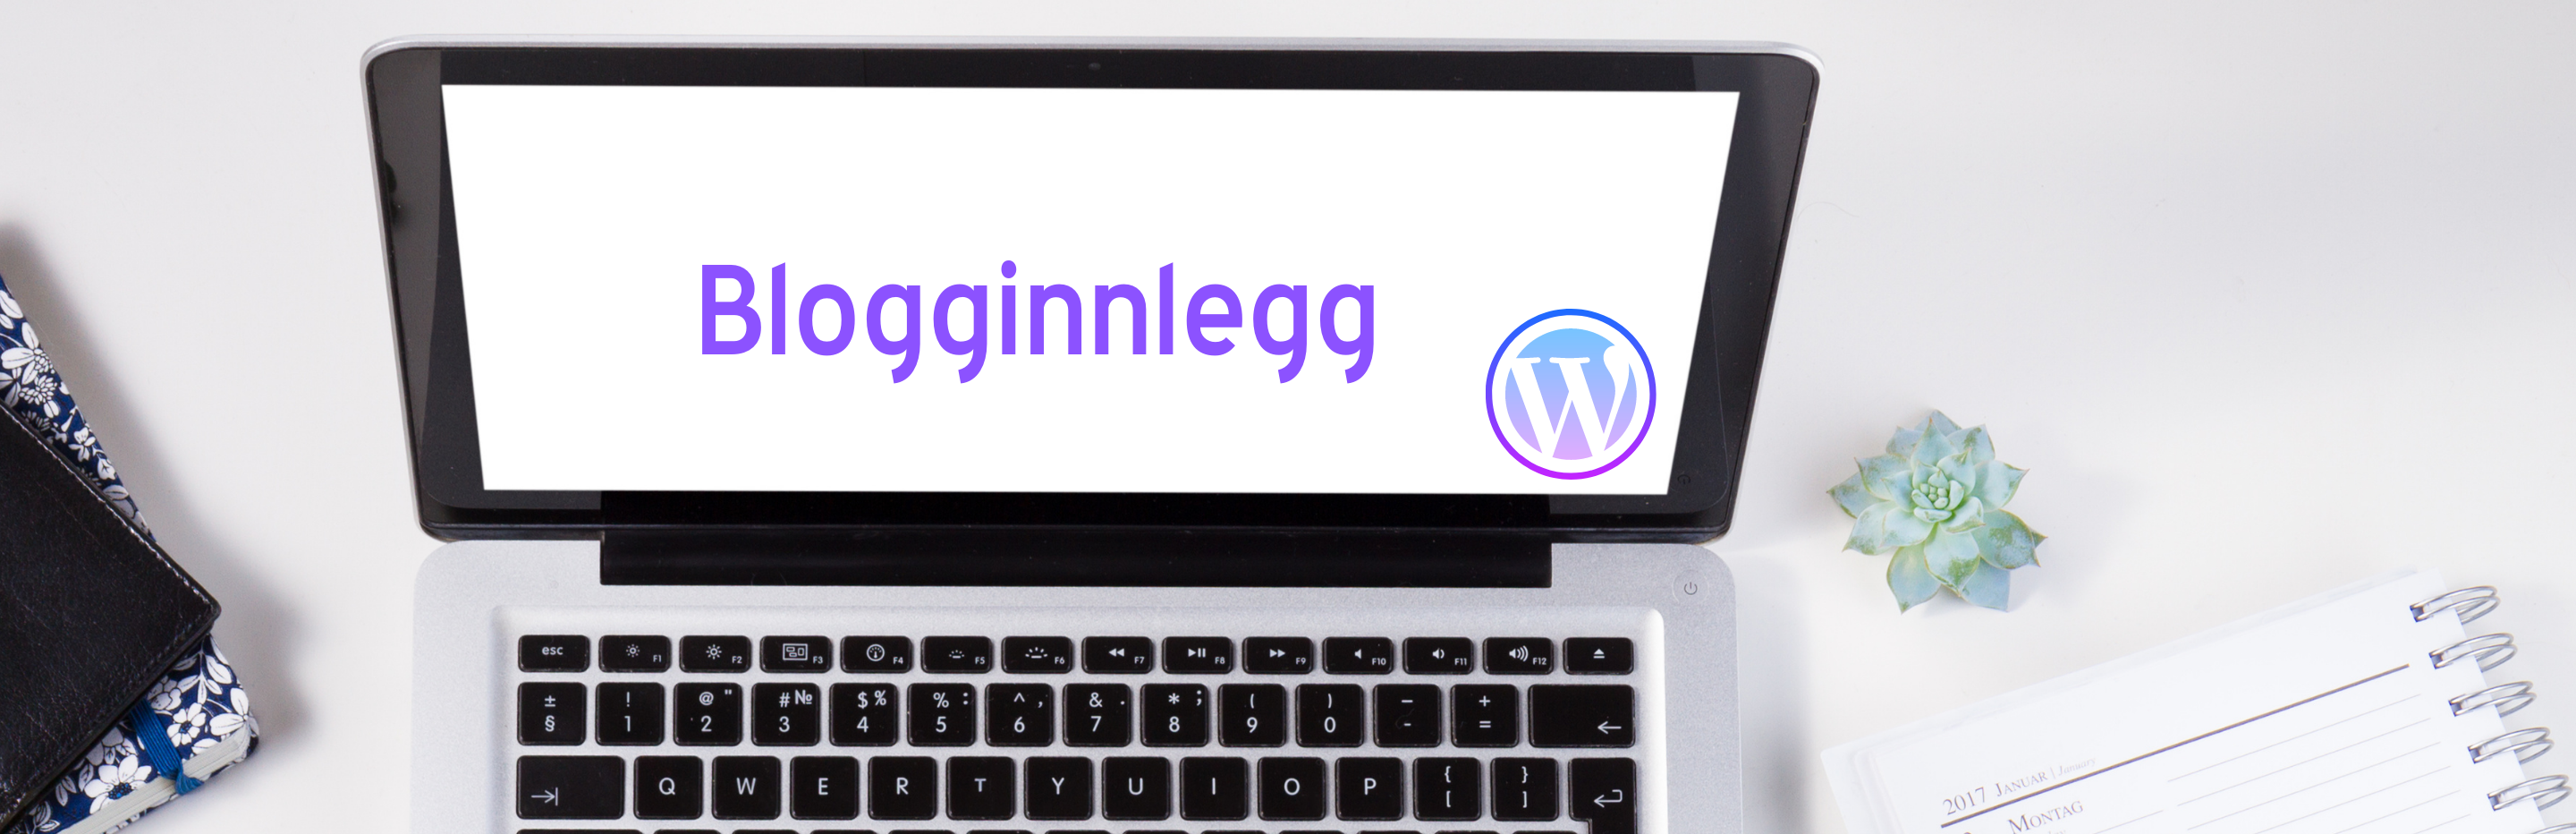 blogginnlegg